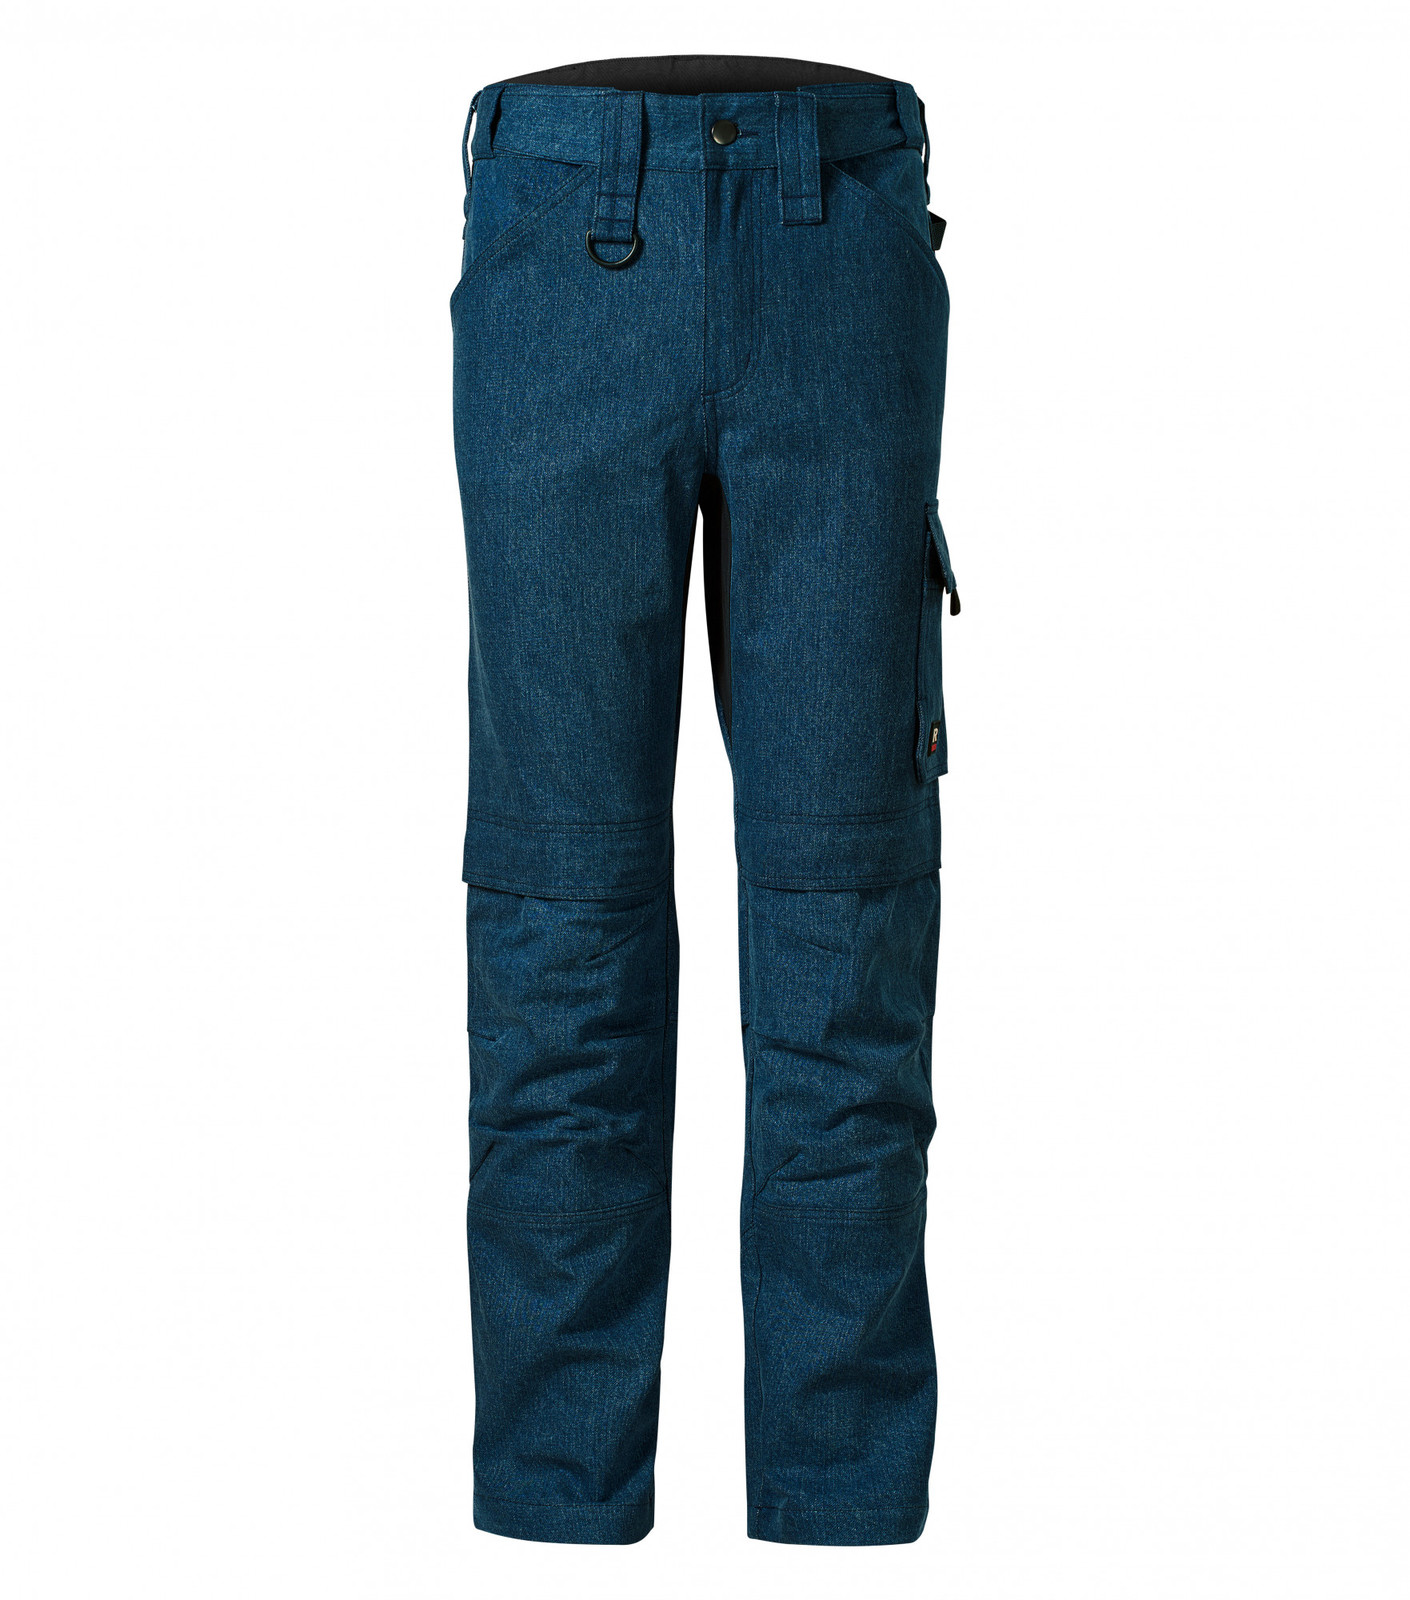 Pánske pracovné džínsy Rimeck Vertex W08 - veľkosť: 54, farba: tmavá navy